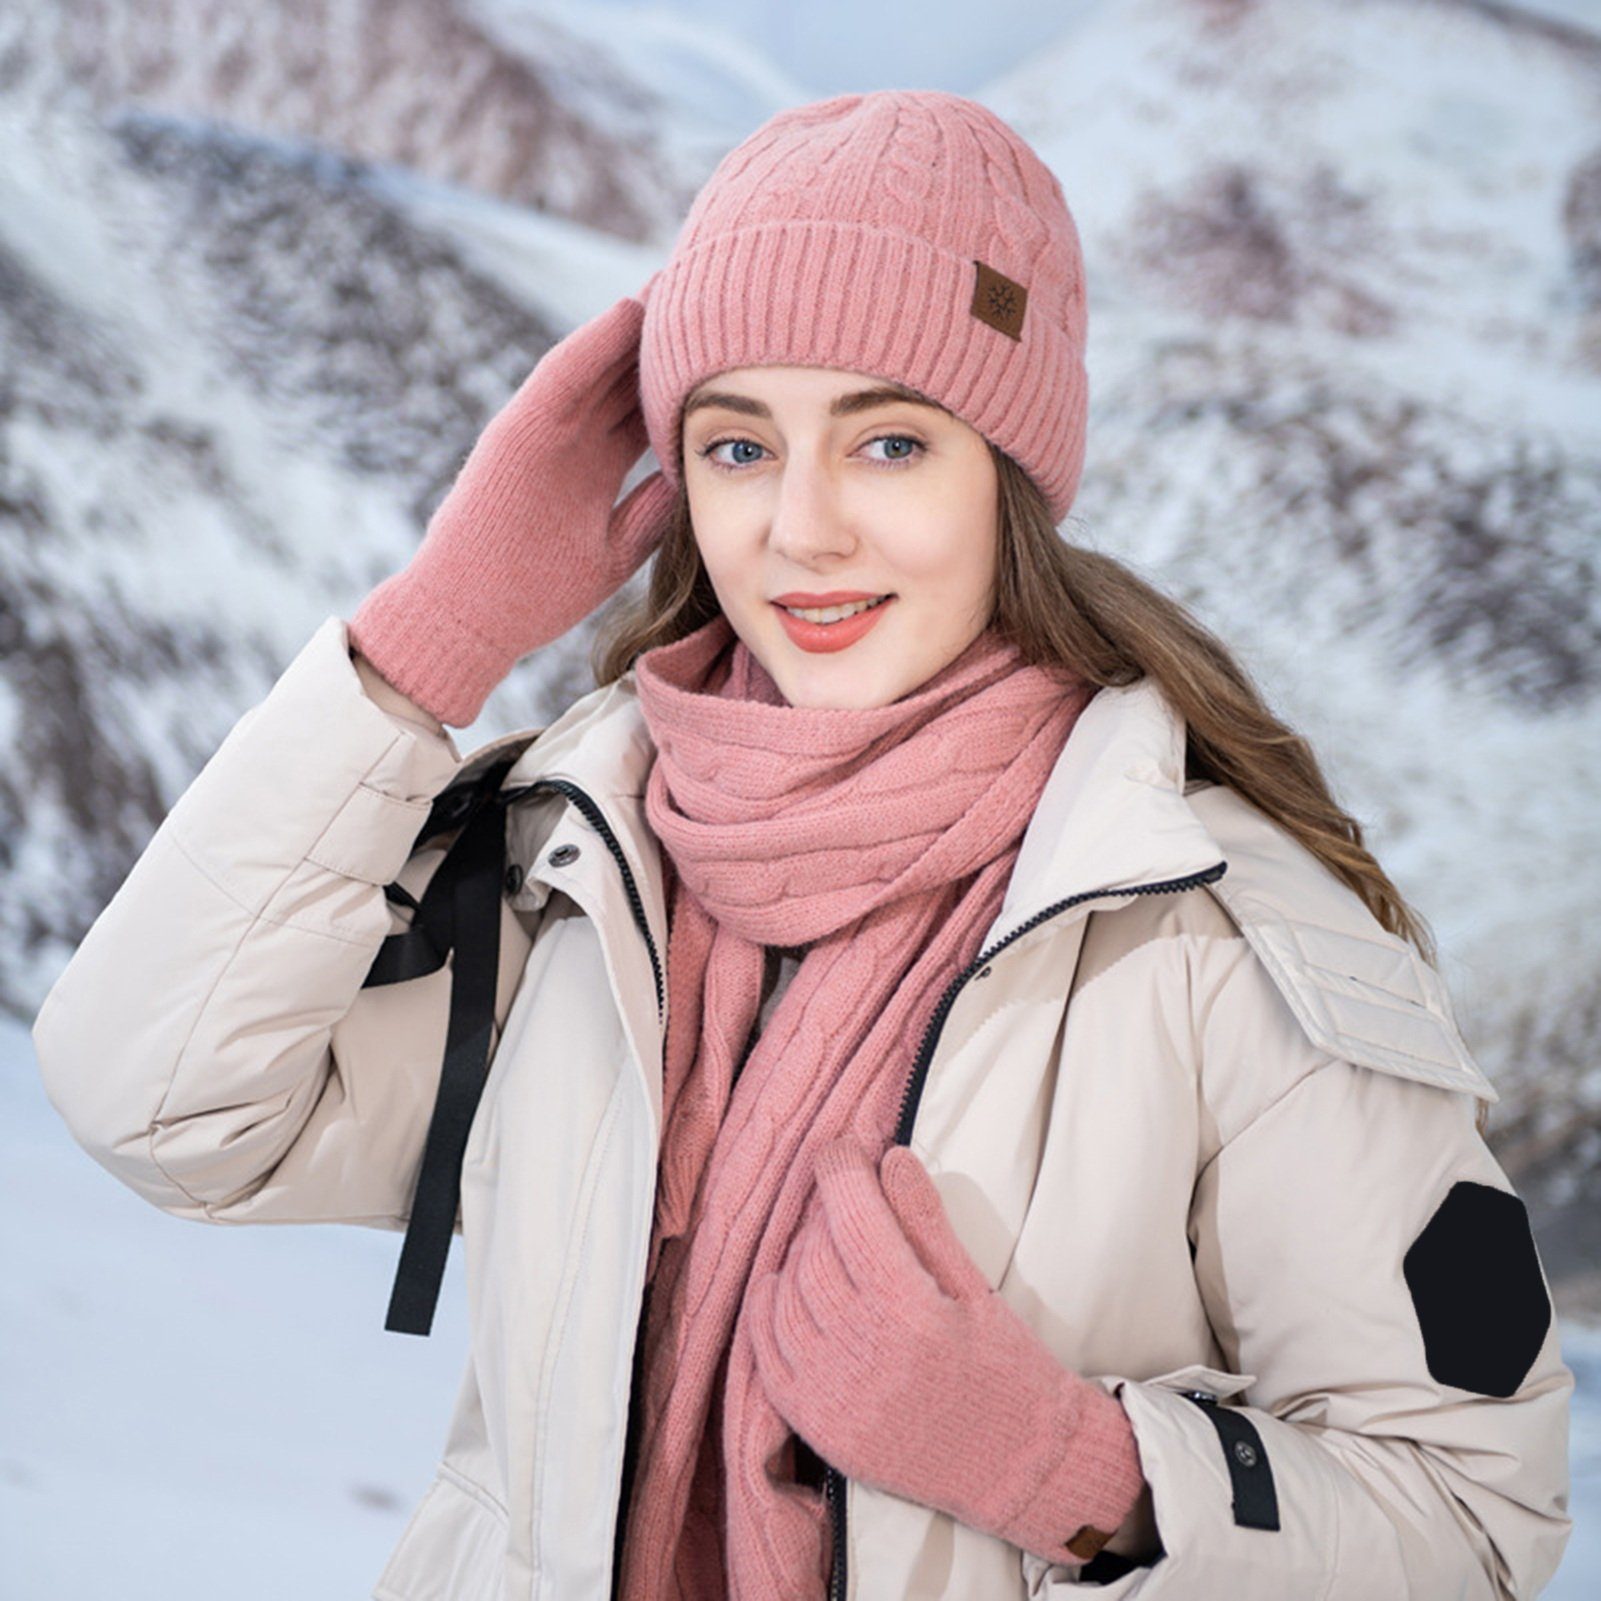 Rutaqian Beanie Winter Warm Beanie Mütze Schal und Touchscreen Handschuhe Set (Der Durchmesser des Hutes beträgt 22,5 cm, was etwas größer sein wird, Dreiteiliges, kältebeständiges, warmes Fleece-Set für den Außenbereich) für Herren und Damen (große Größe) Rosa